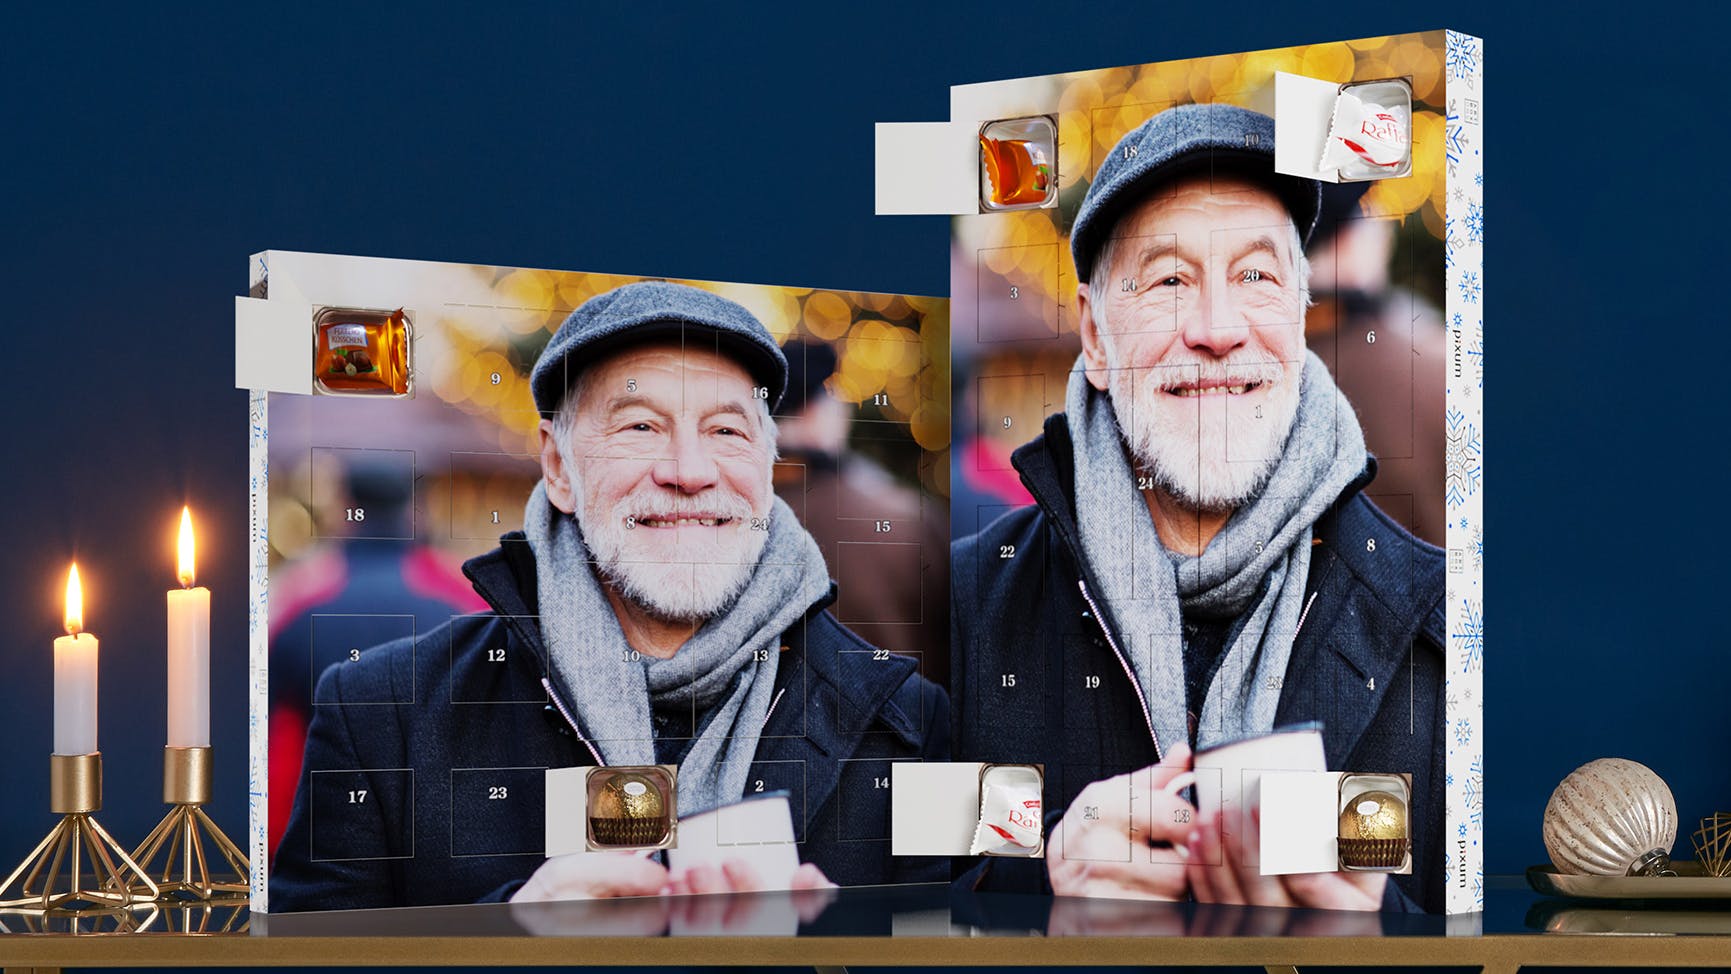 Adventskalender met Ferrero pralines en een foto van een lachende, oudere man